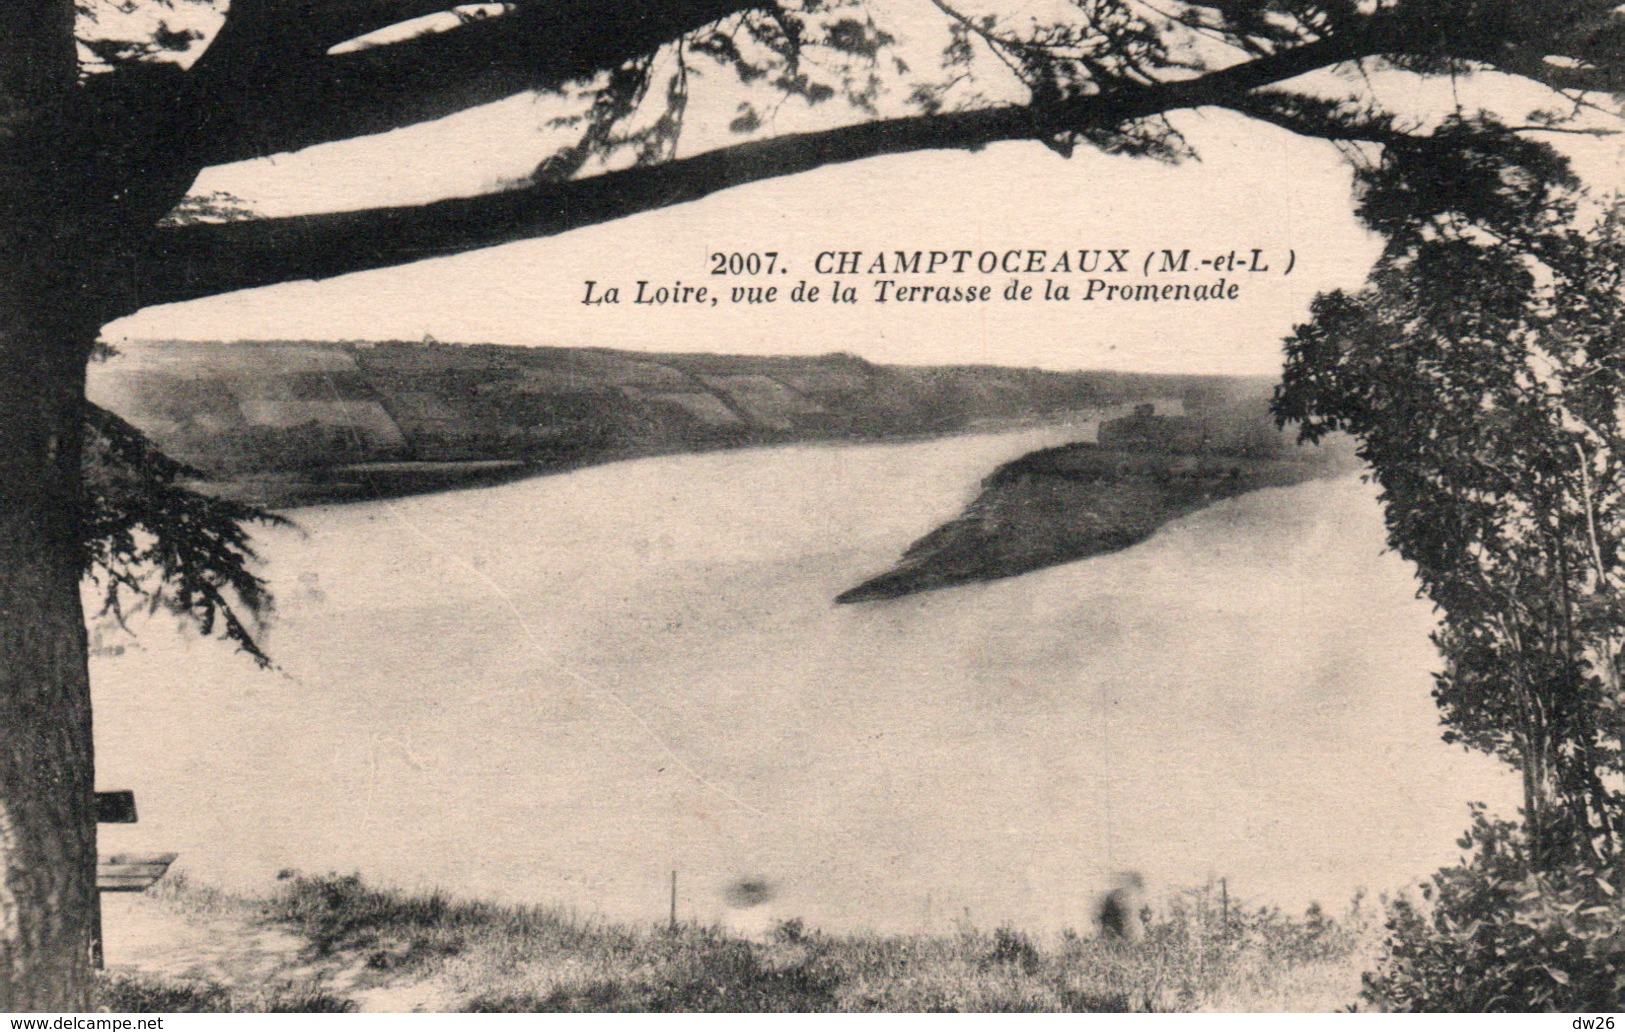 Champtoceaux (Maine-et-Loire) La Loire Vue De La Terrasse De La Promenade - Edition J. Nozais - Carte N° 2007 - Champtoceaux